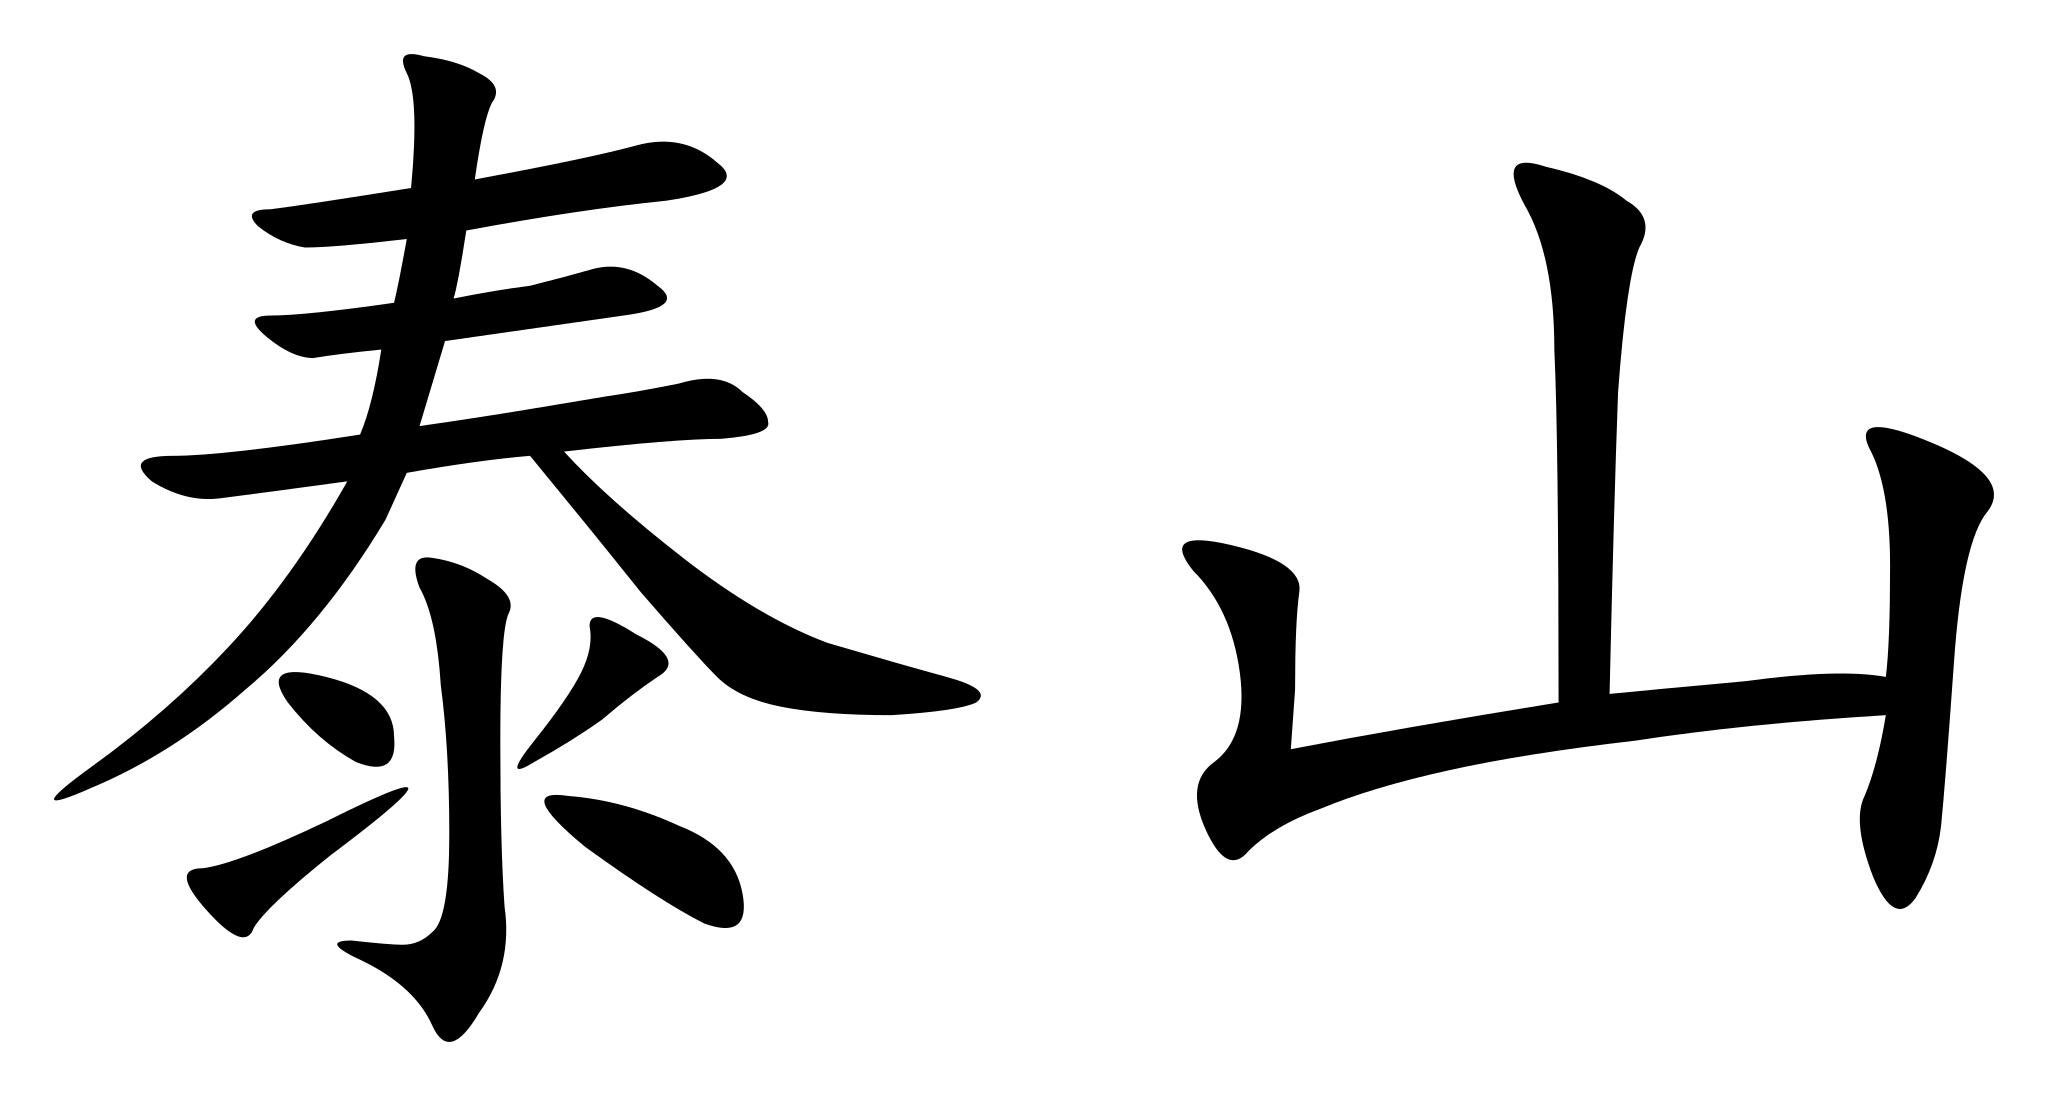 Shi китайский иероглиф